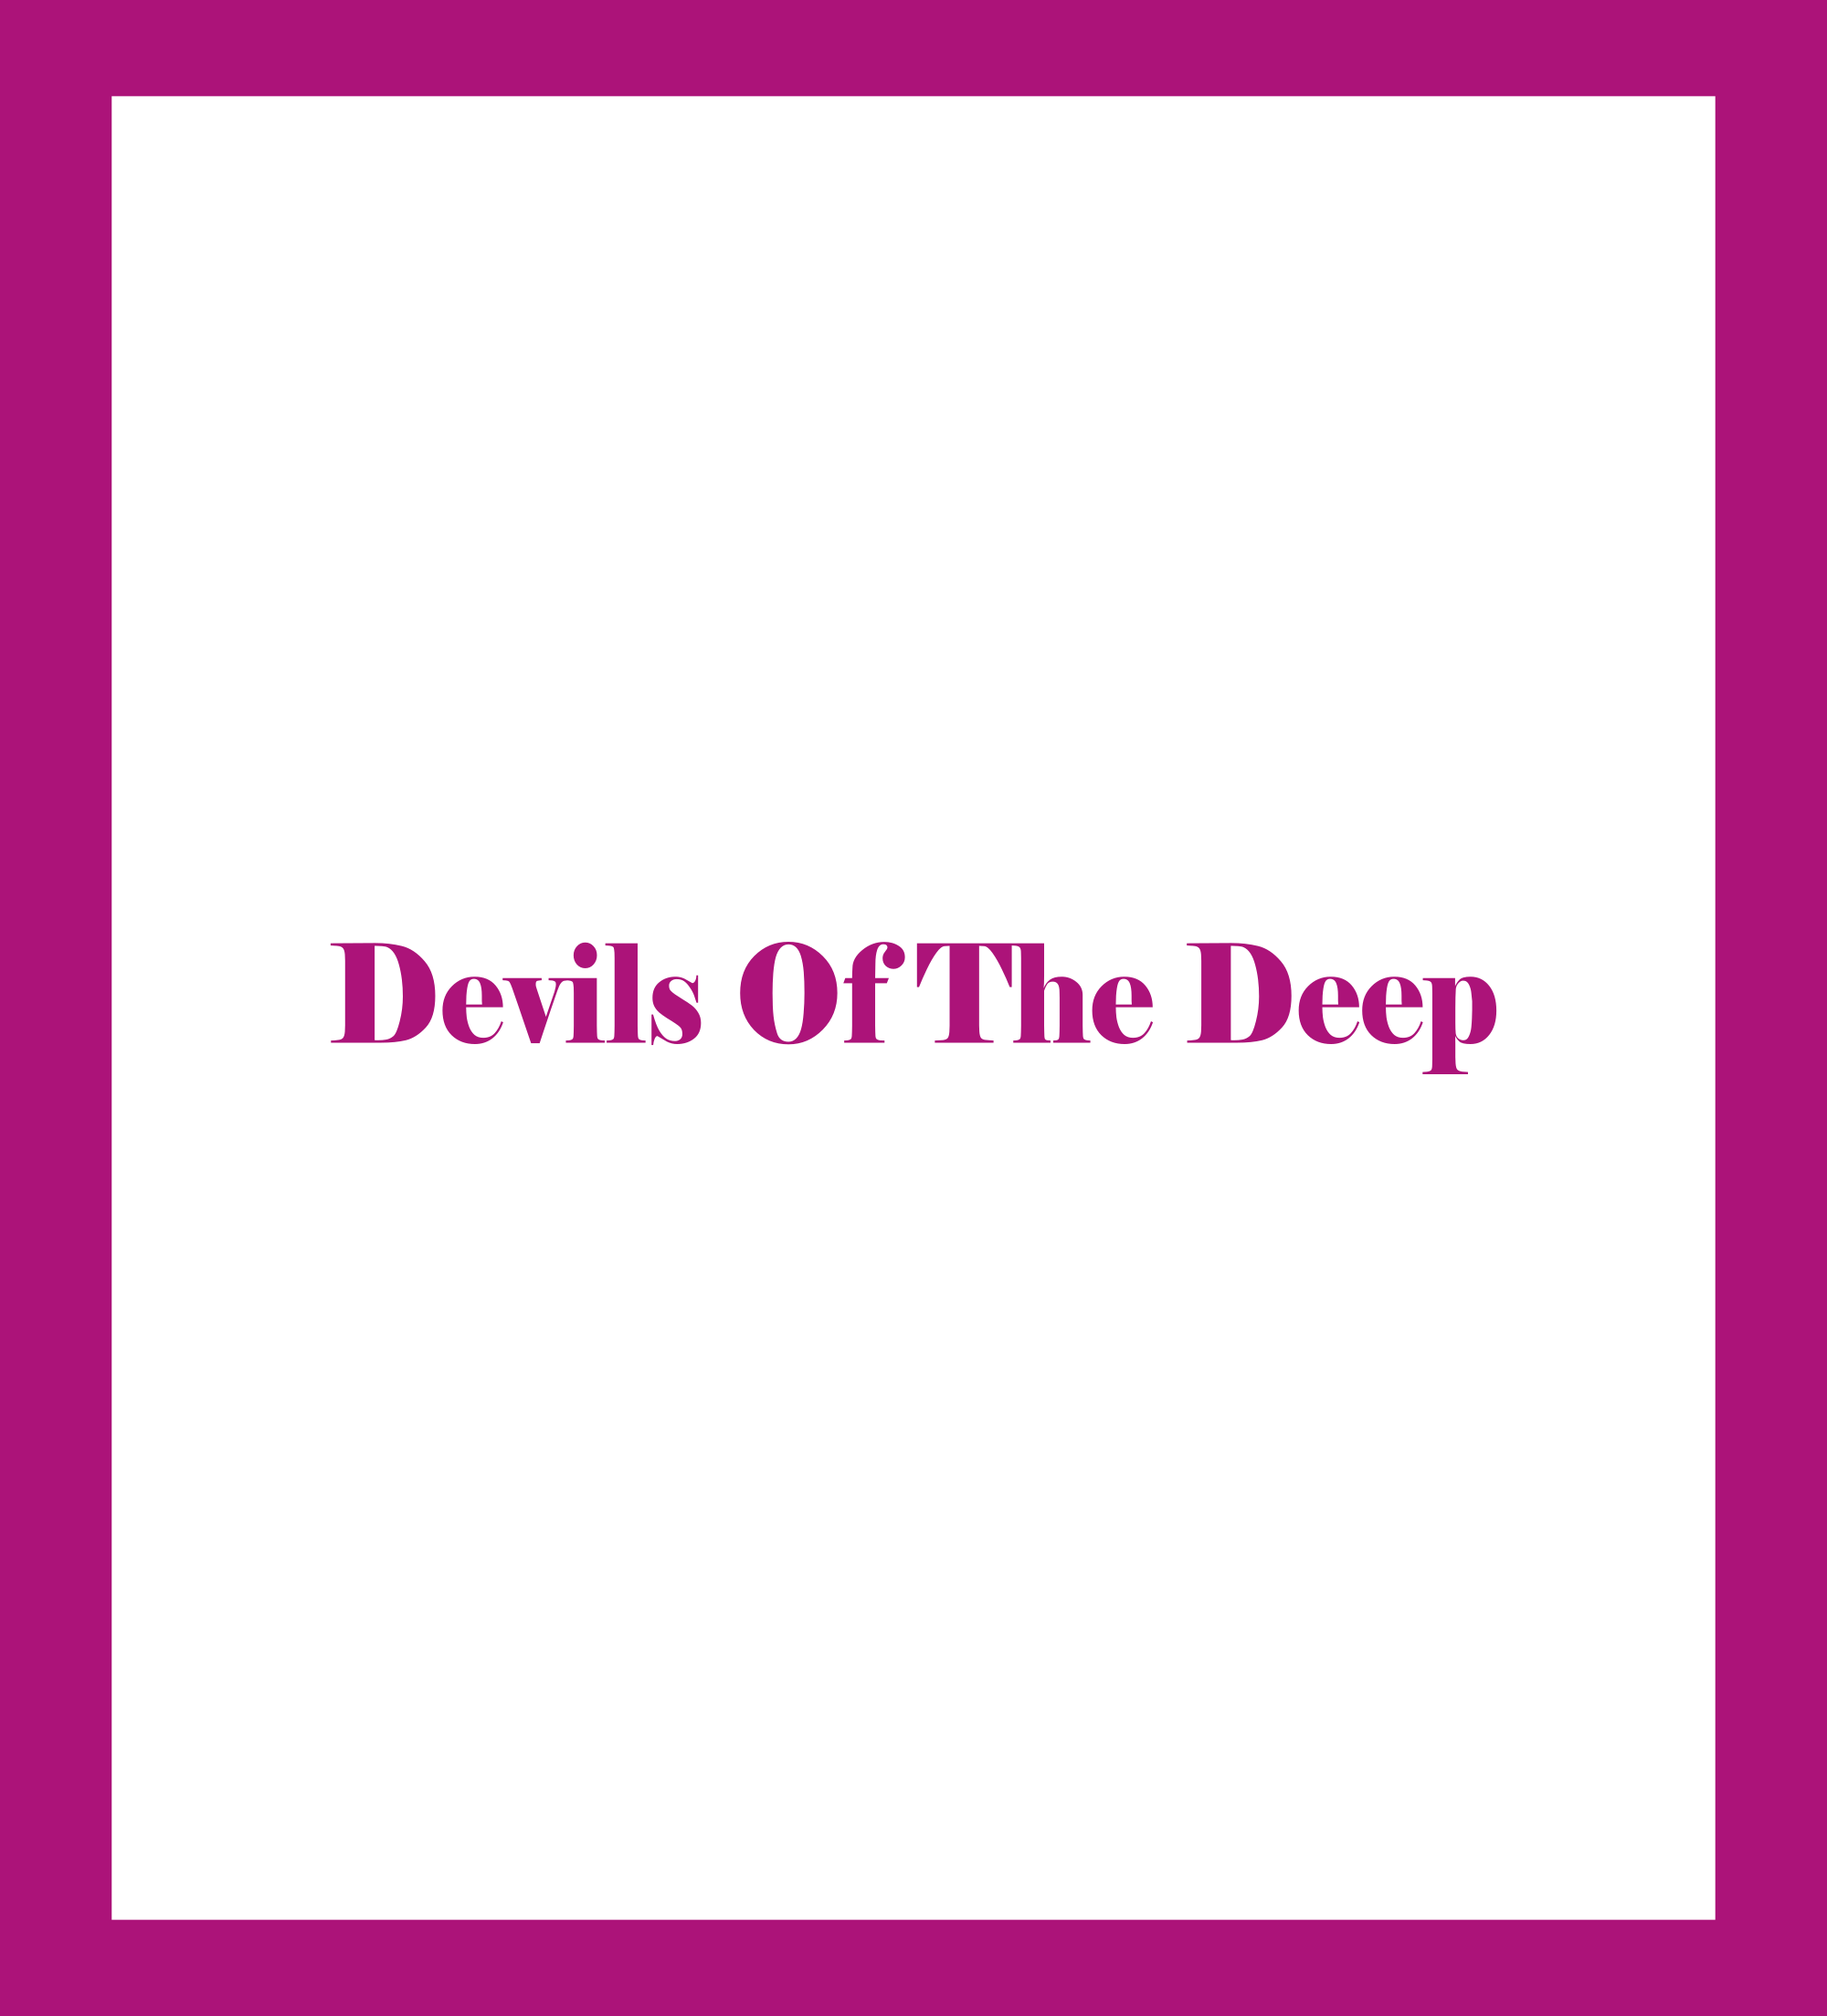 Caratula de Devils Of The Deep (Gigantes de las profundidades) 